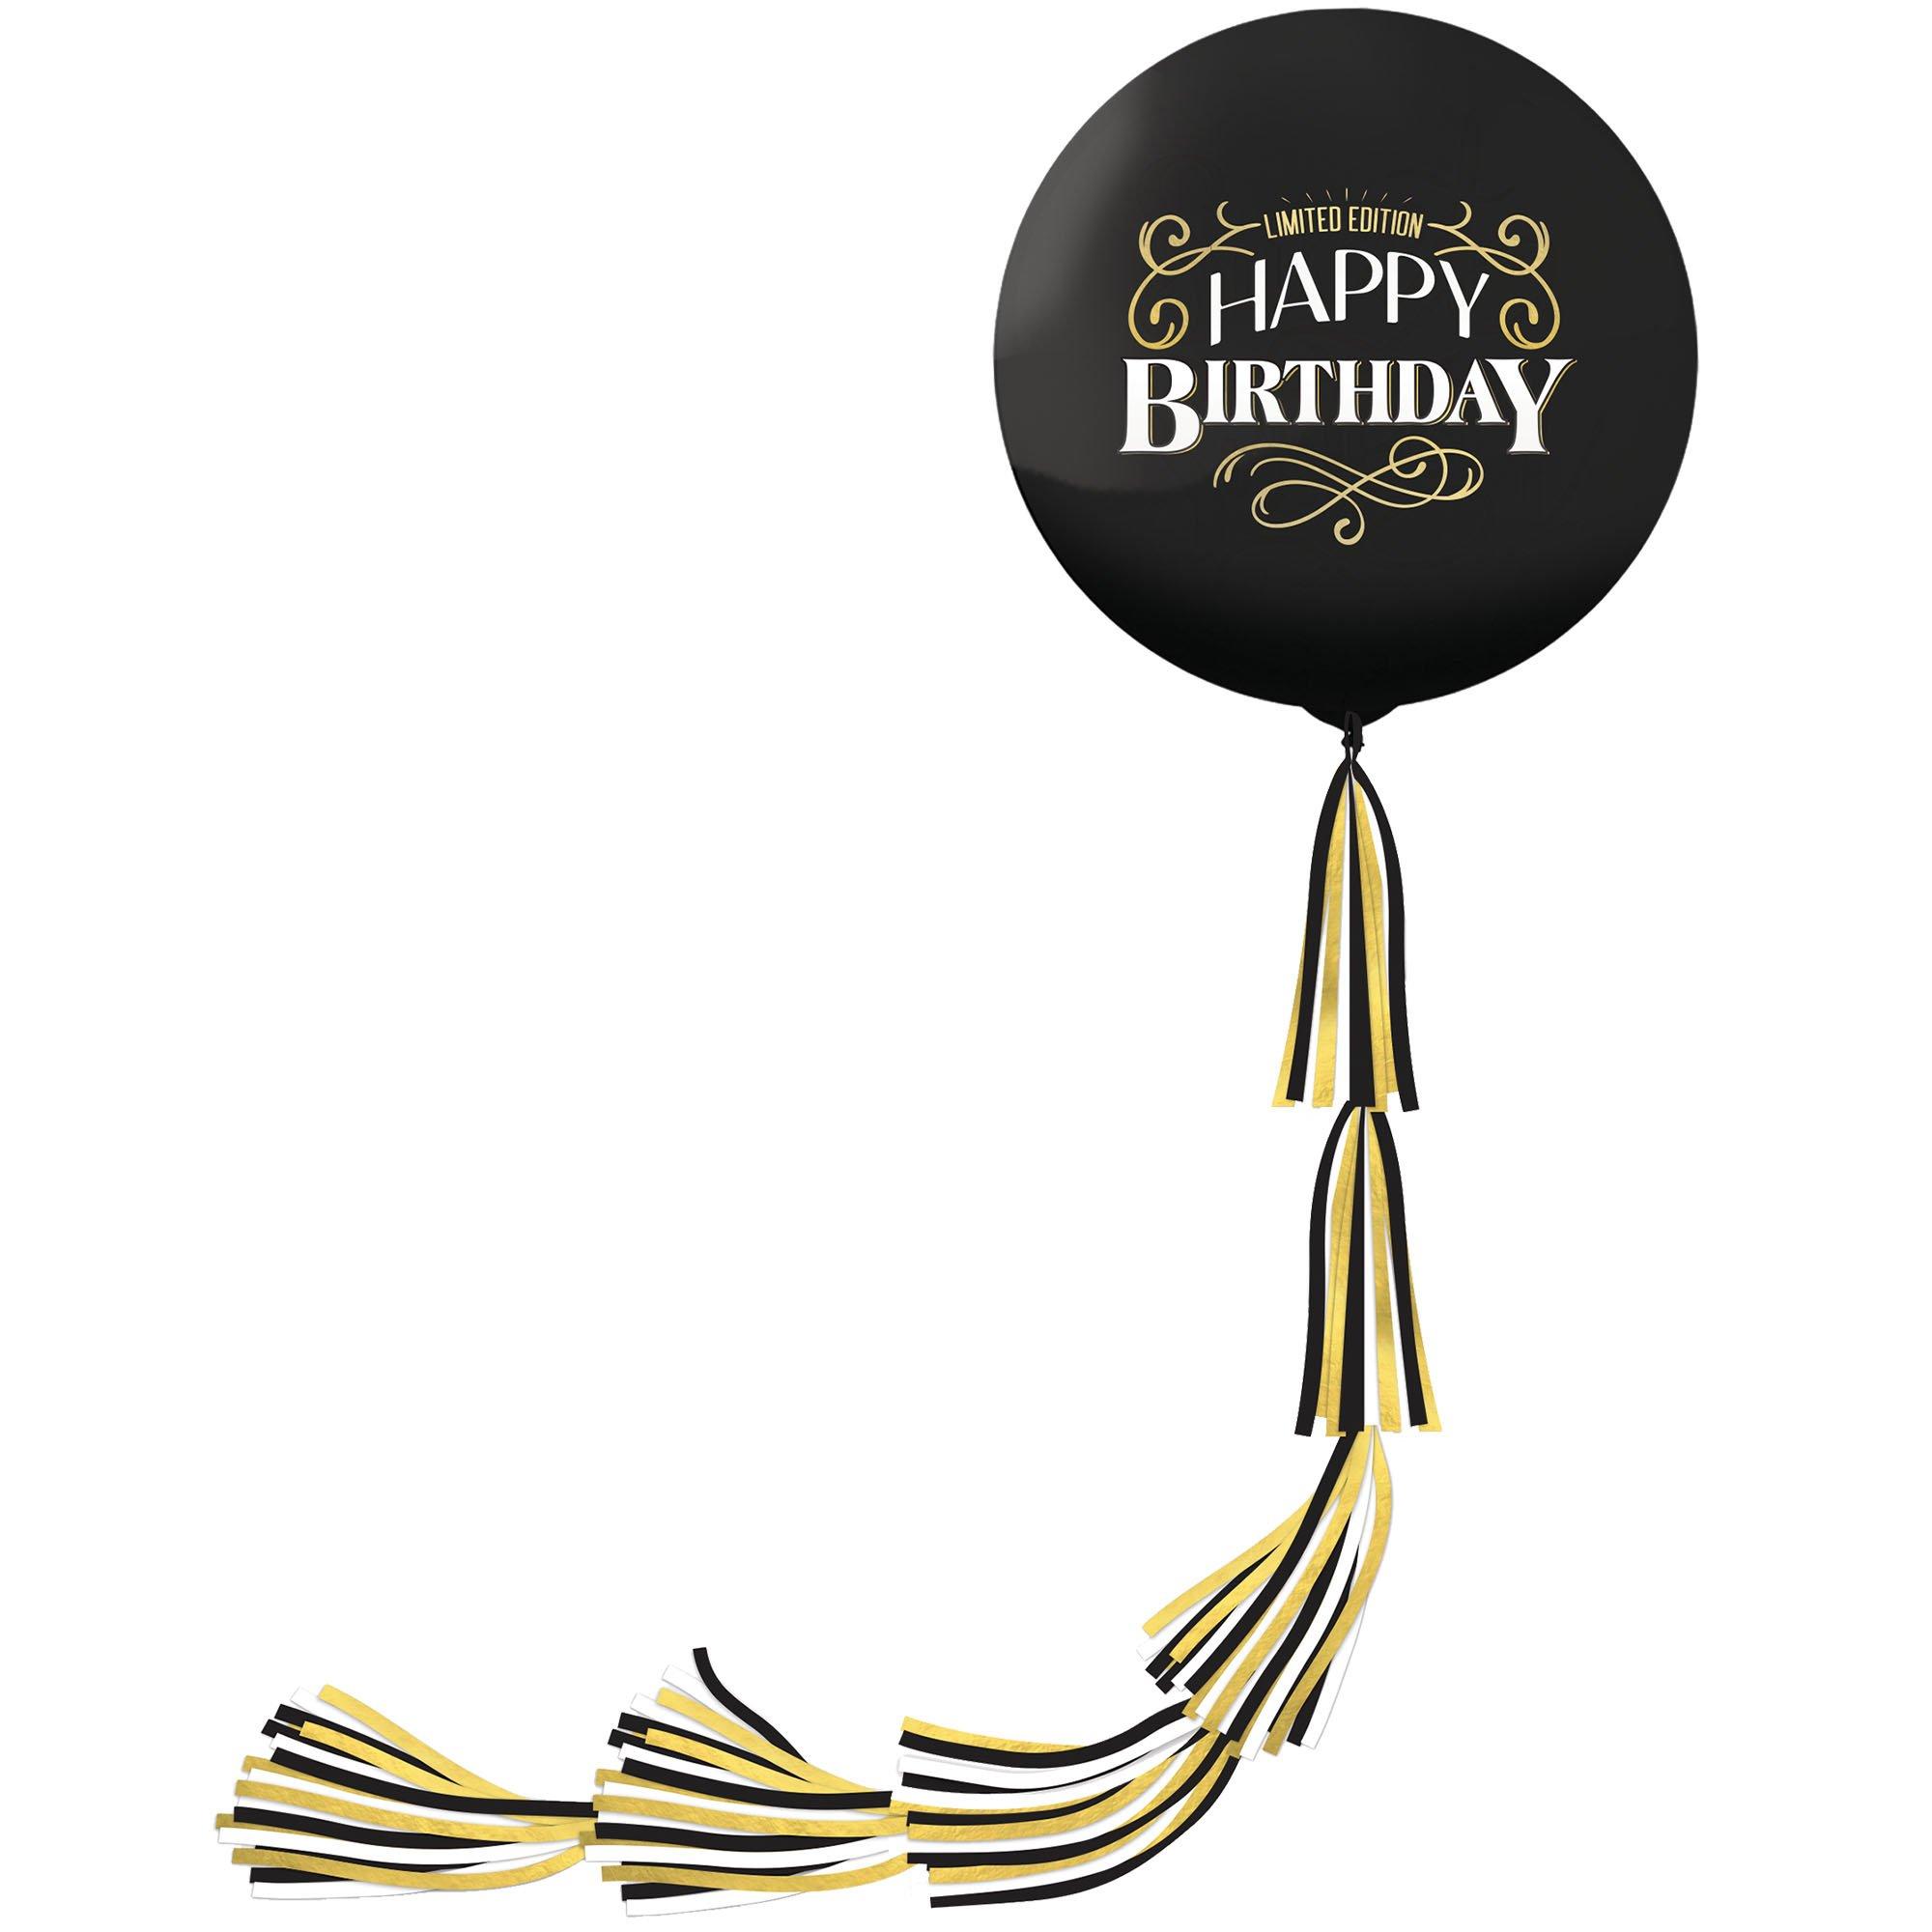 Giant Birthday Balloon, Happy Birthday Balloon, Black Tassel Tail